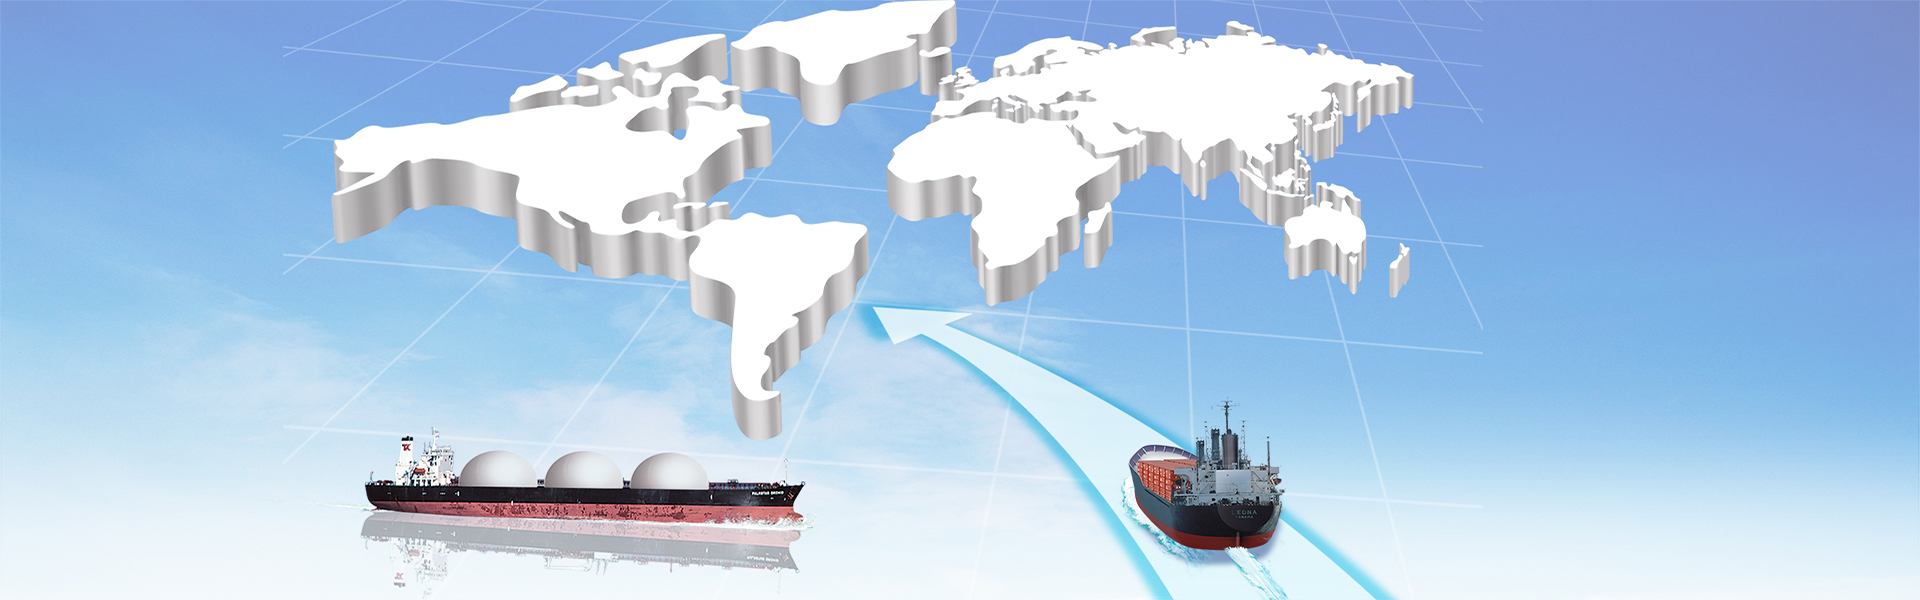 青岛米德物流——俄罗斯物流|青岛海运物流|海运物流|远东物流|俄罗斯DDP服务